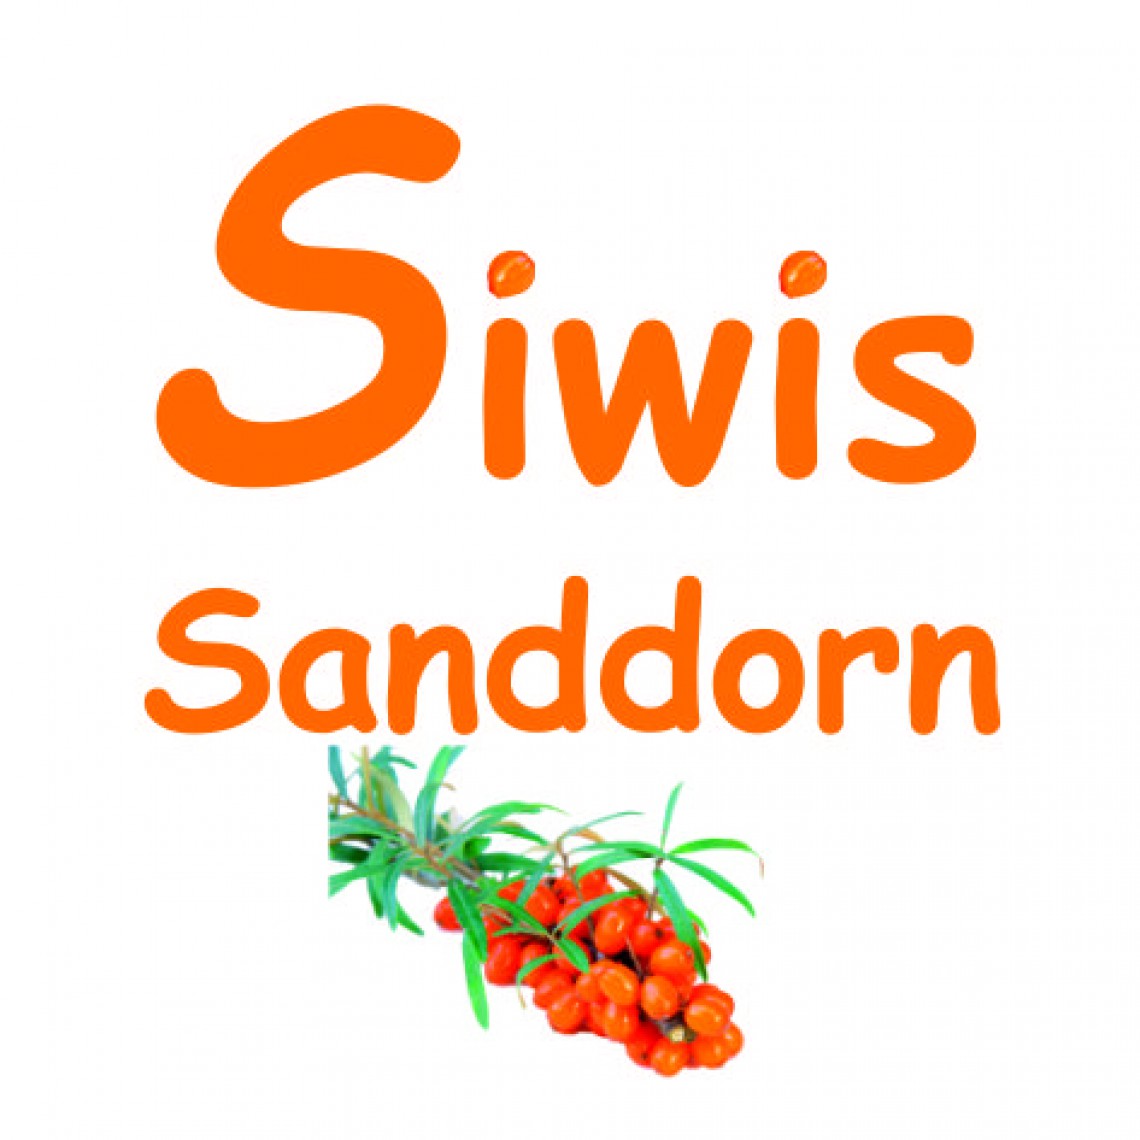 Siwis Sanddorn